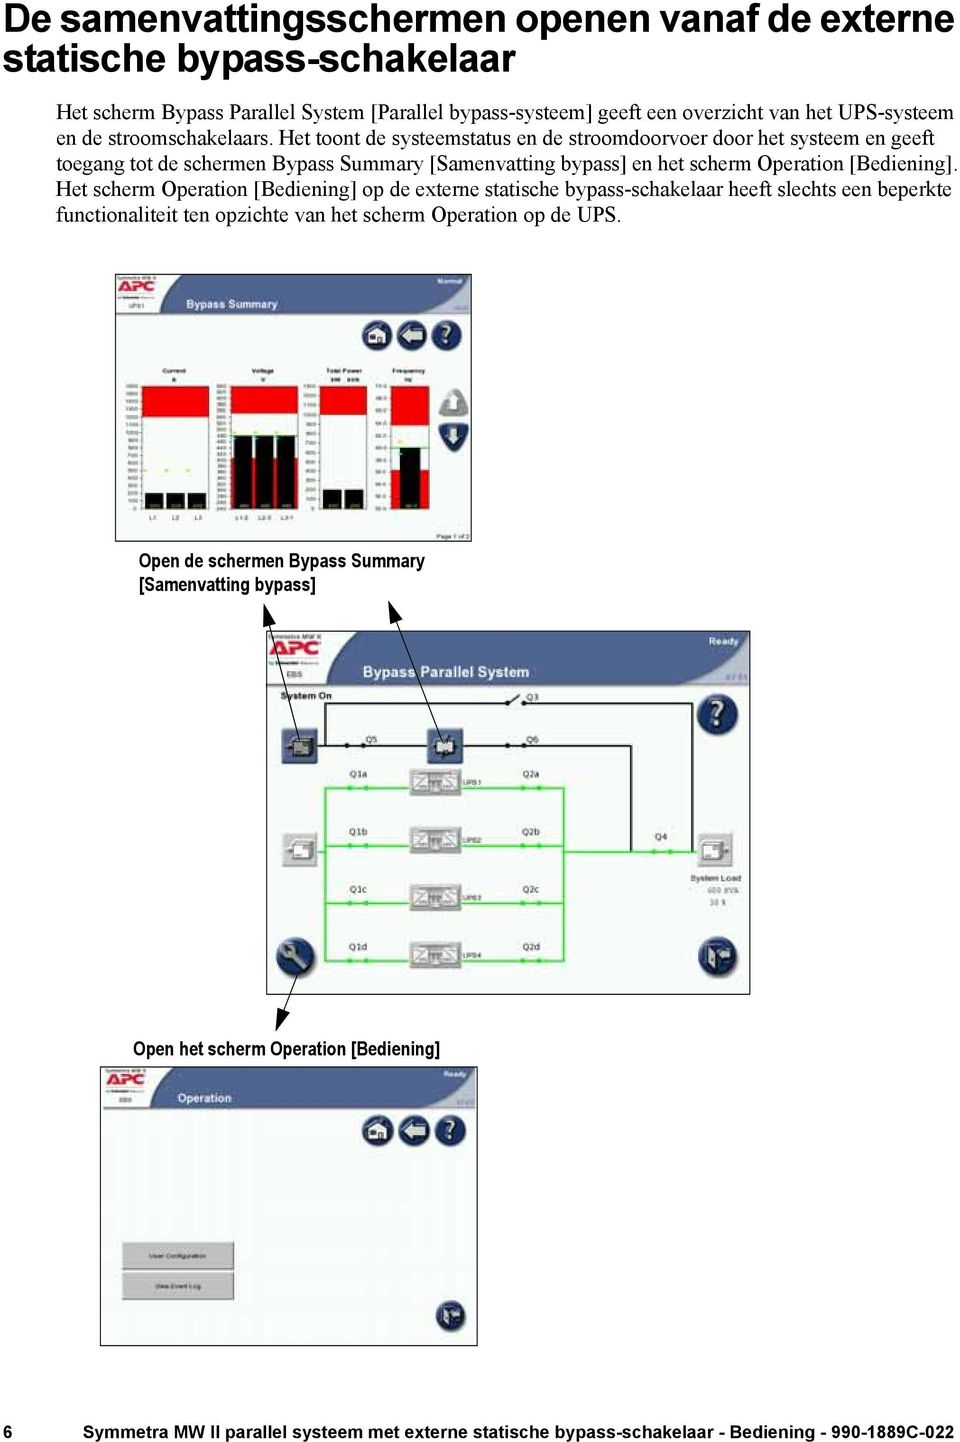 Het toont de systeemstatus en de stroomdoorvoer door het systeem en geeft toegang tot de schermen Bypass Summary [Samenvatting bypass] en het scherm Operation